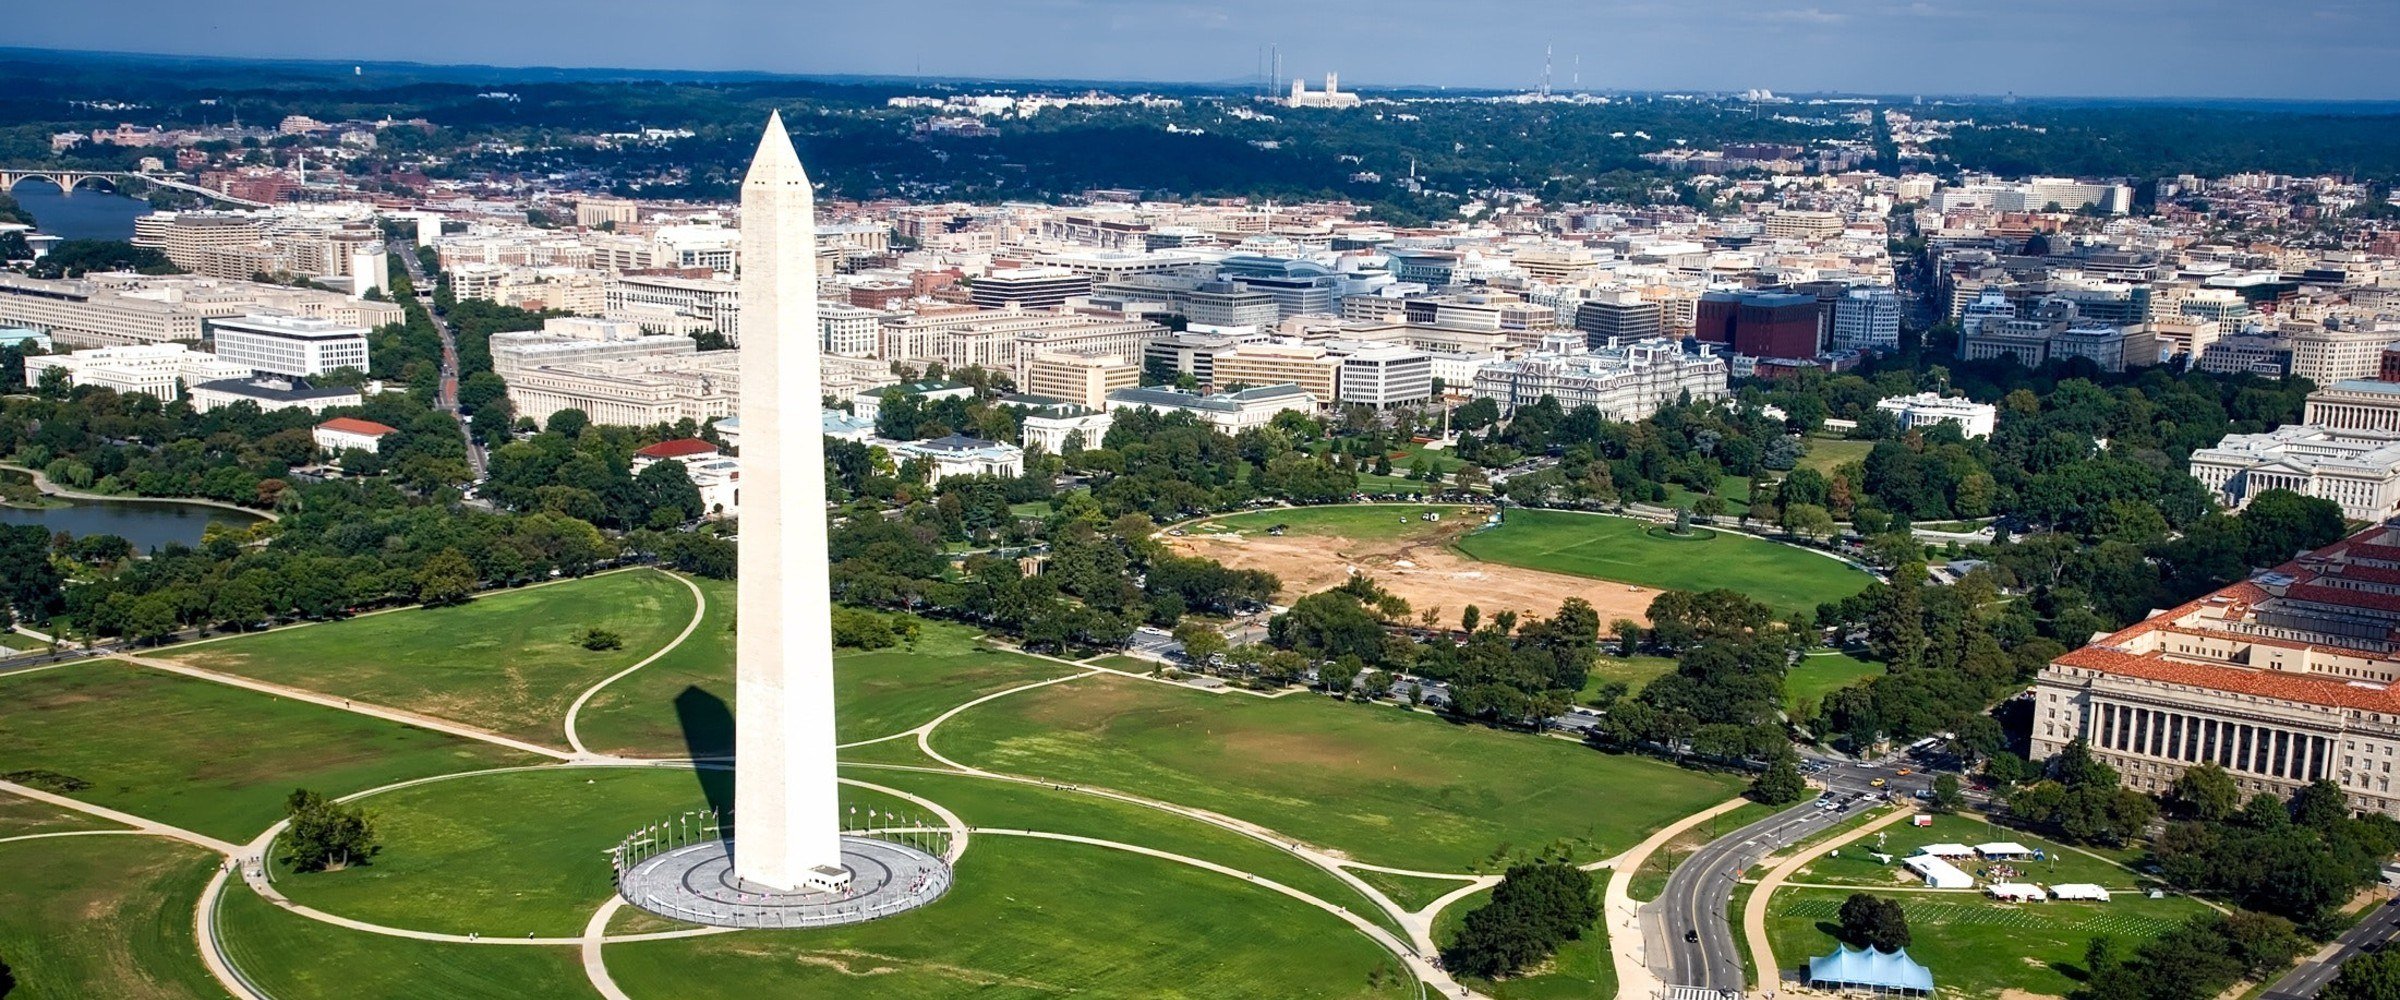 landscape view of Washington DC